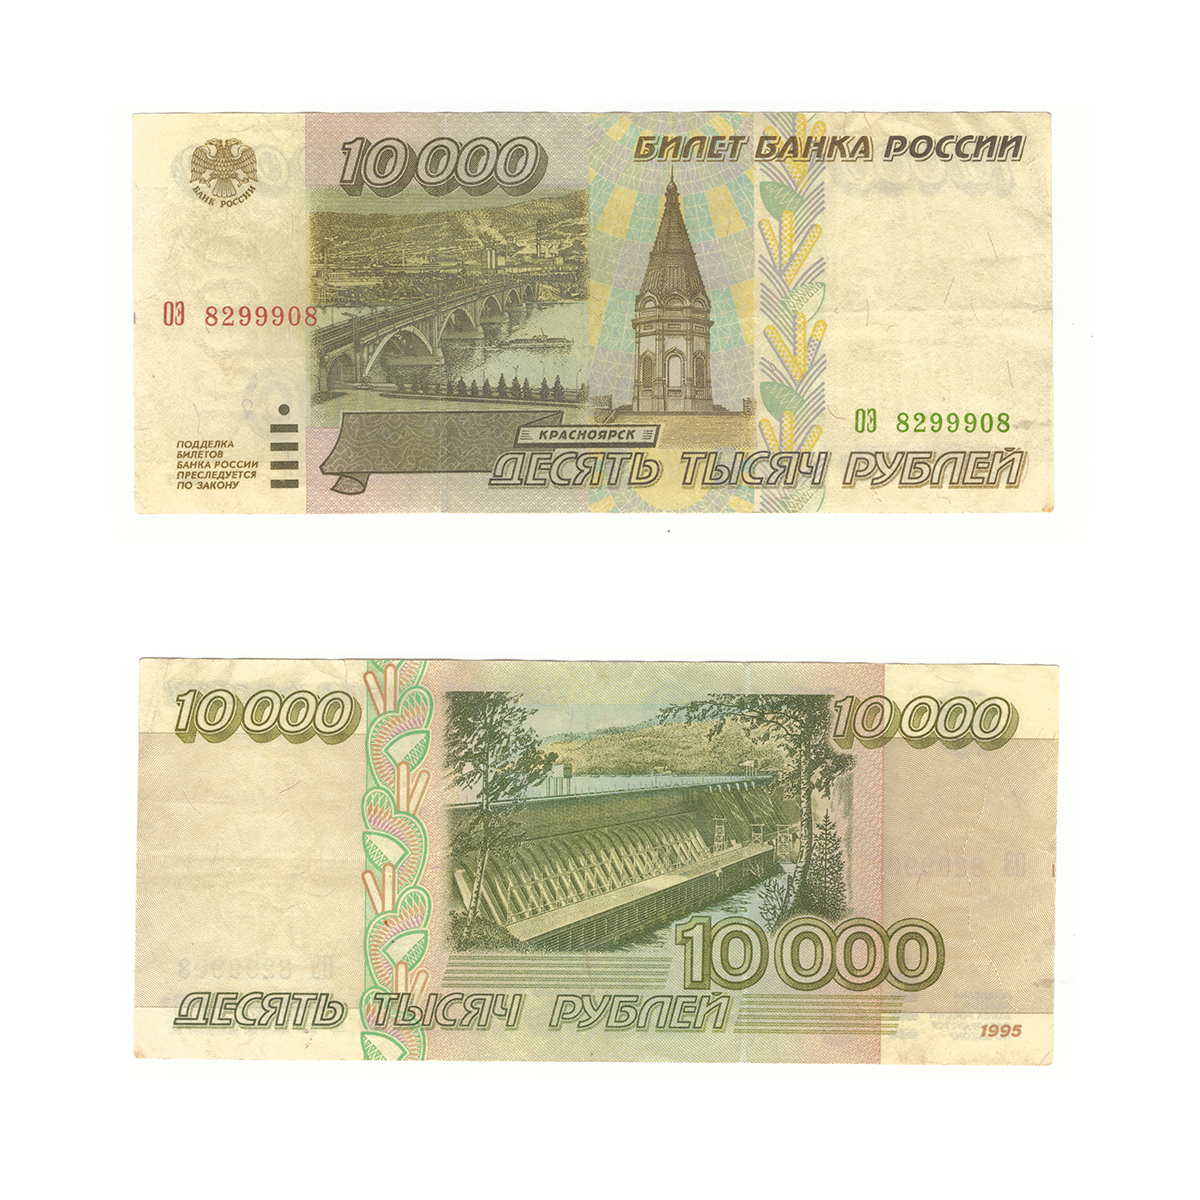 10000 рублей россии. Купюра 10000 рублей 1995 года. Банкнота 10000 рублей 1995. 10000 Рублей бумажные. Десять тысяч рублей 1995 года.